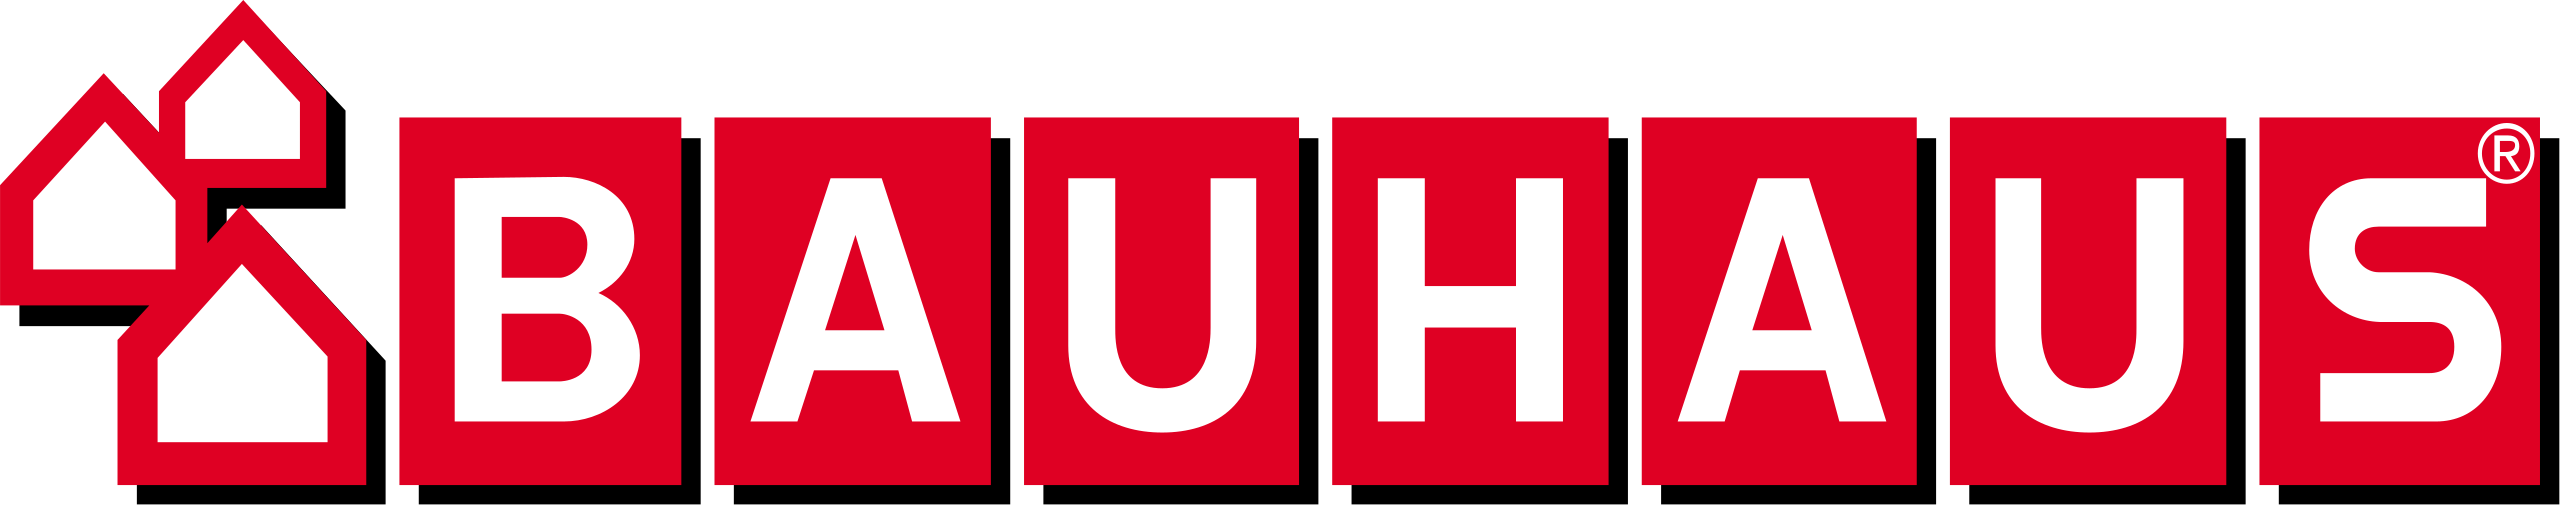 Bauhaus_norge_logo